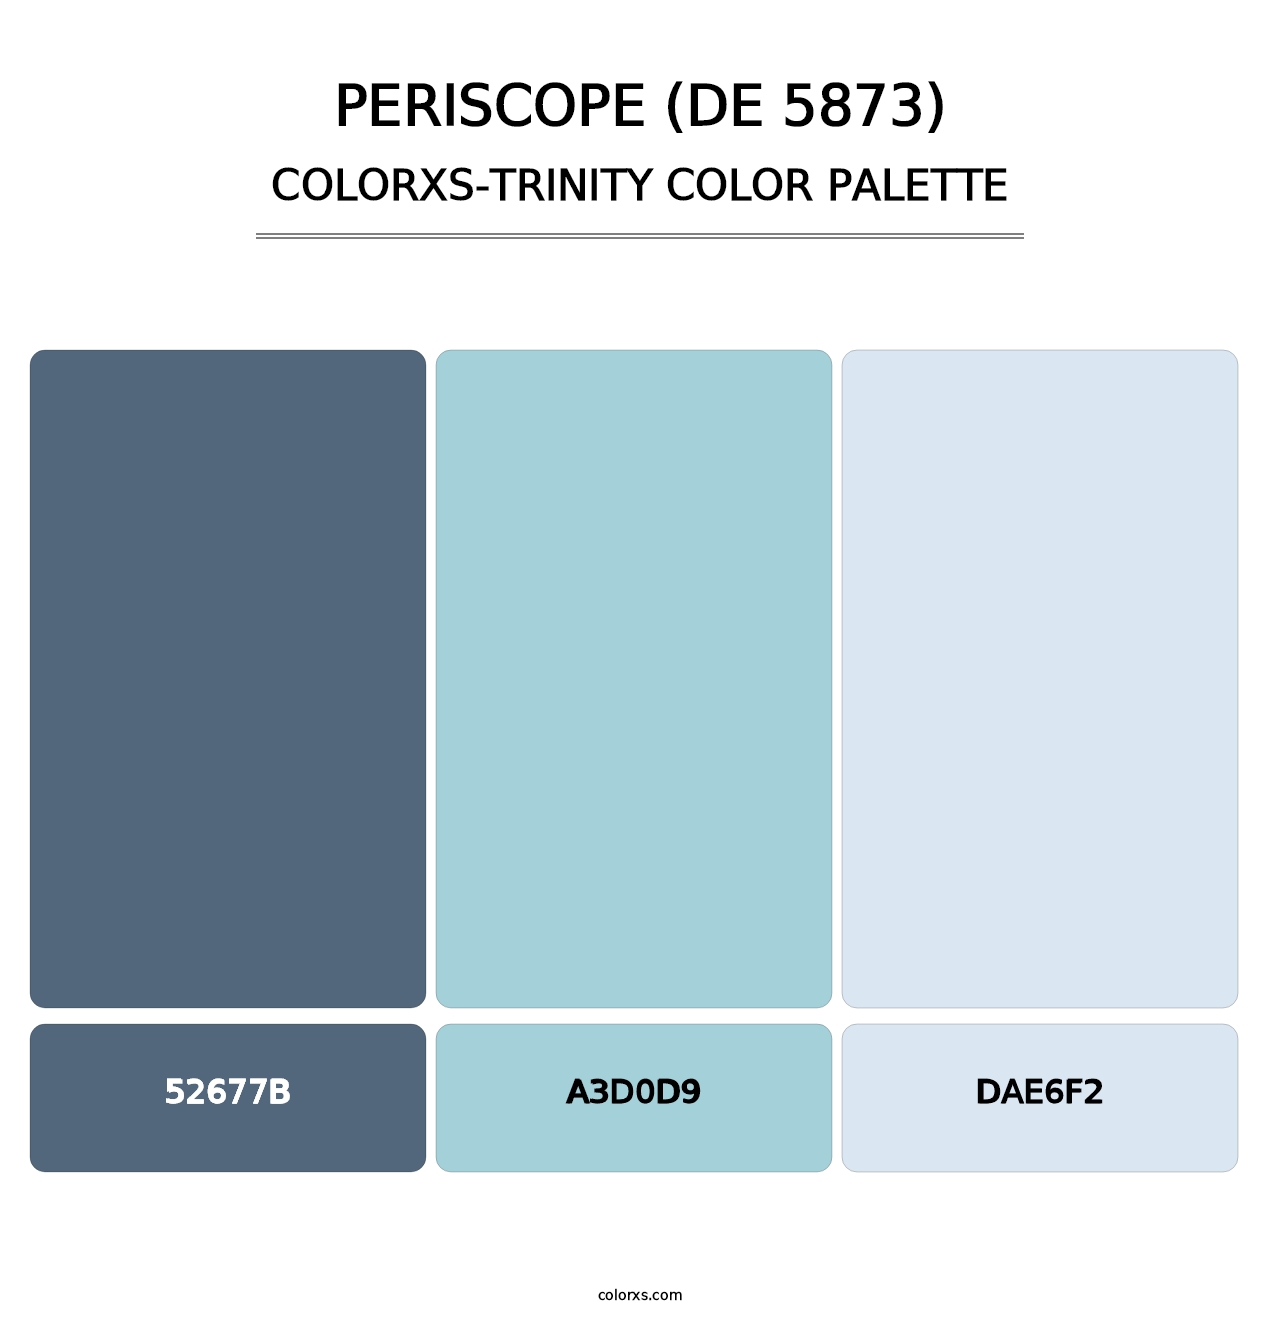 Periscope (DE 5873) - Colorxs Trinity Palette